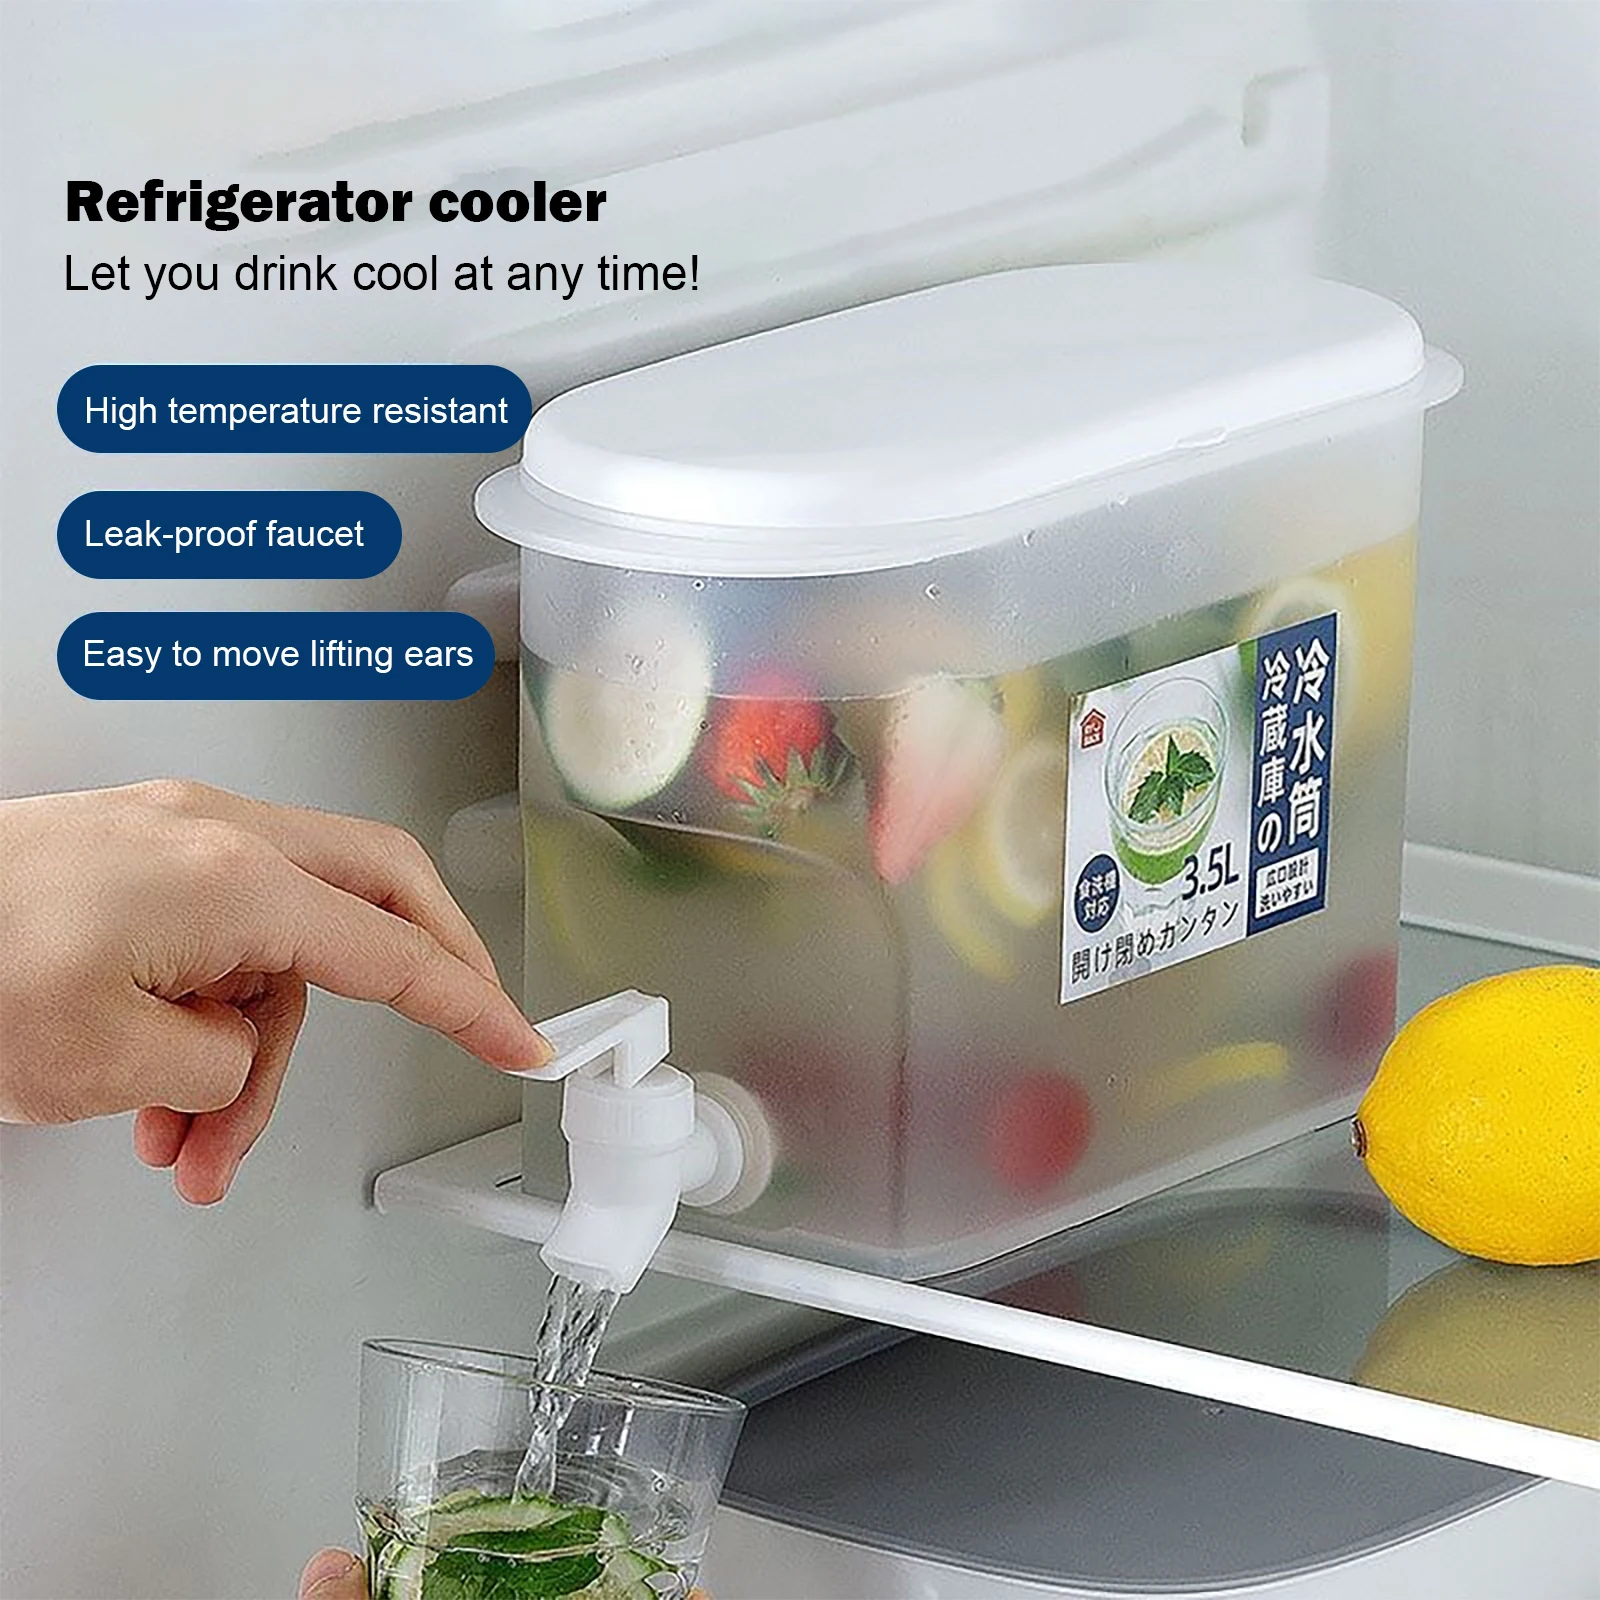 https://ae01.alicdn.com/kf/Sca3cb6af329e494b8d67cc6af0946b9bY/Large-Cold-Kettle-Refrigerator-with-Faucet-Lemonade-Bottle-Drinkware-Kettle-Pot-Beverage-Dispenser-Home-Cool-Water.jpg